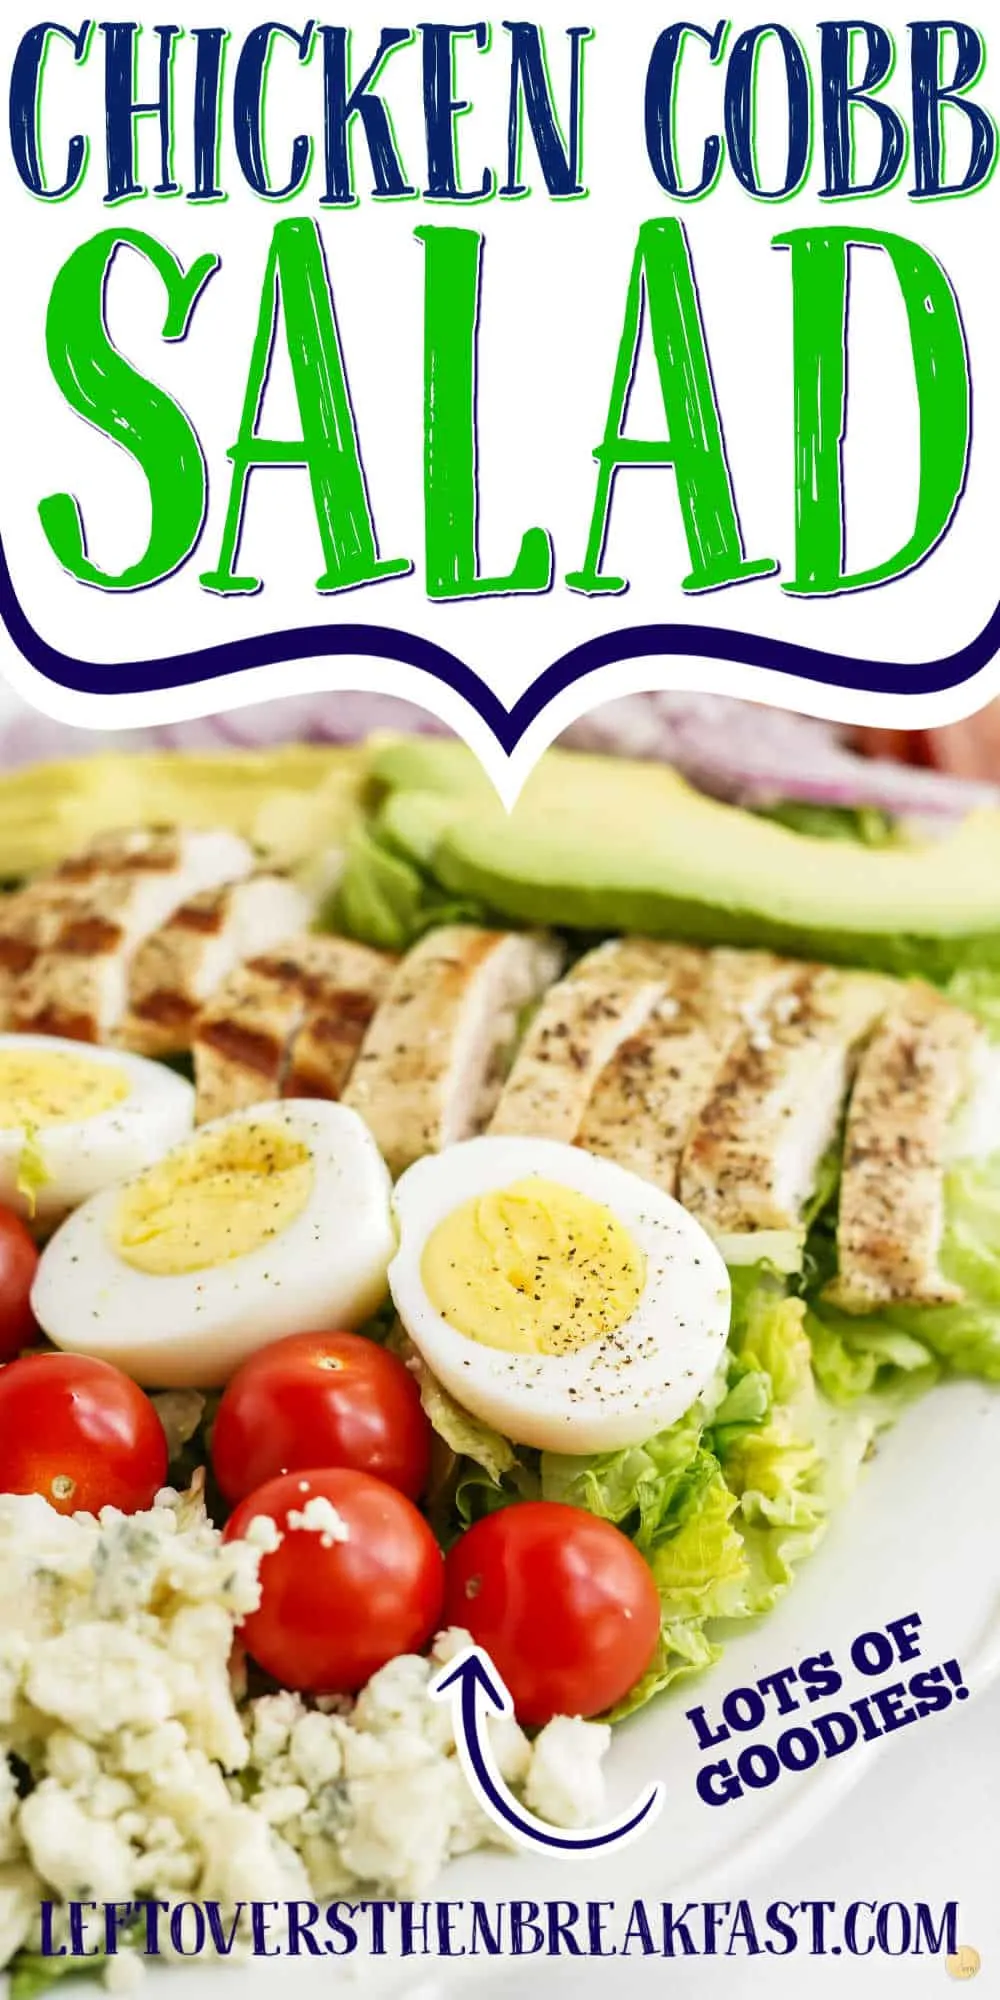 chicken salad with text "chicken cobb salad"